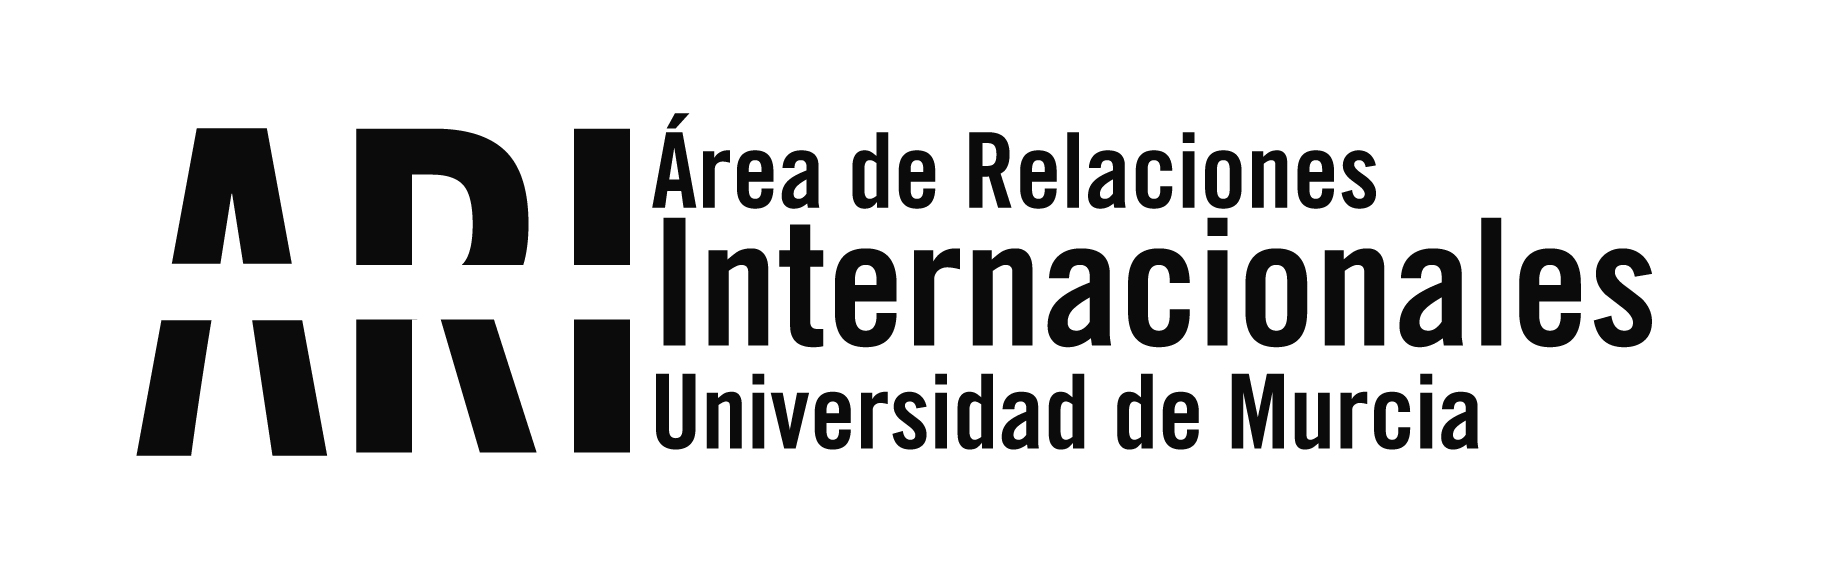 Reunión de la Red ASEA-UNINET - Reunión de la Red ASEA-UNINET - Área de Relaciones Internacionales